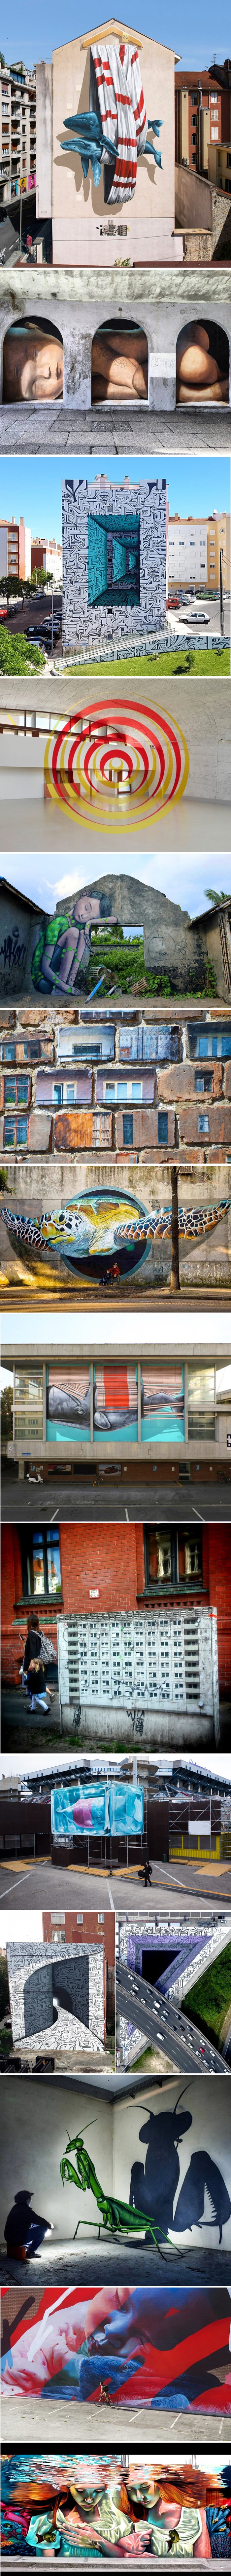 Predivni primjeri ulične umjetnosti odvest će vas u neki drugi svijet